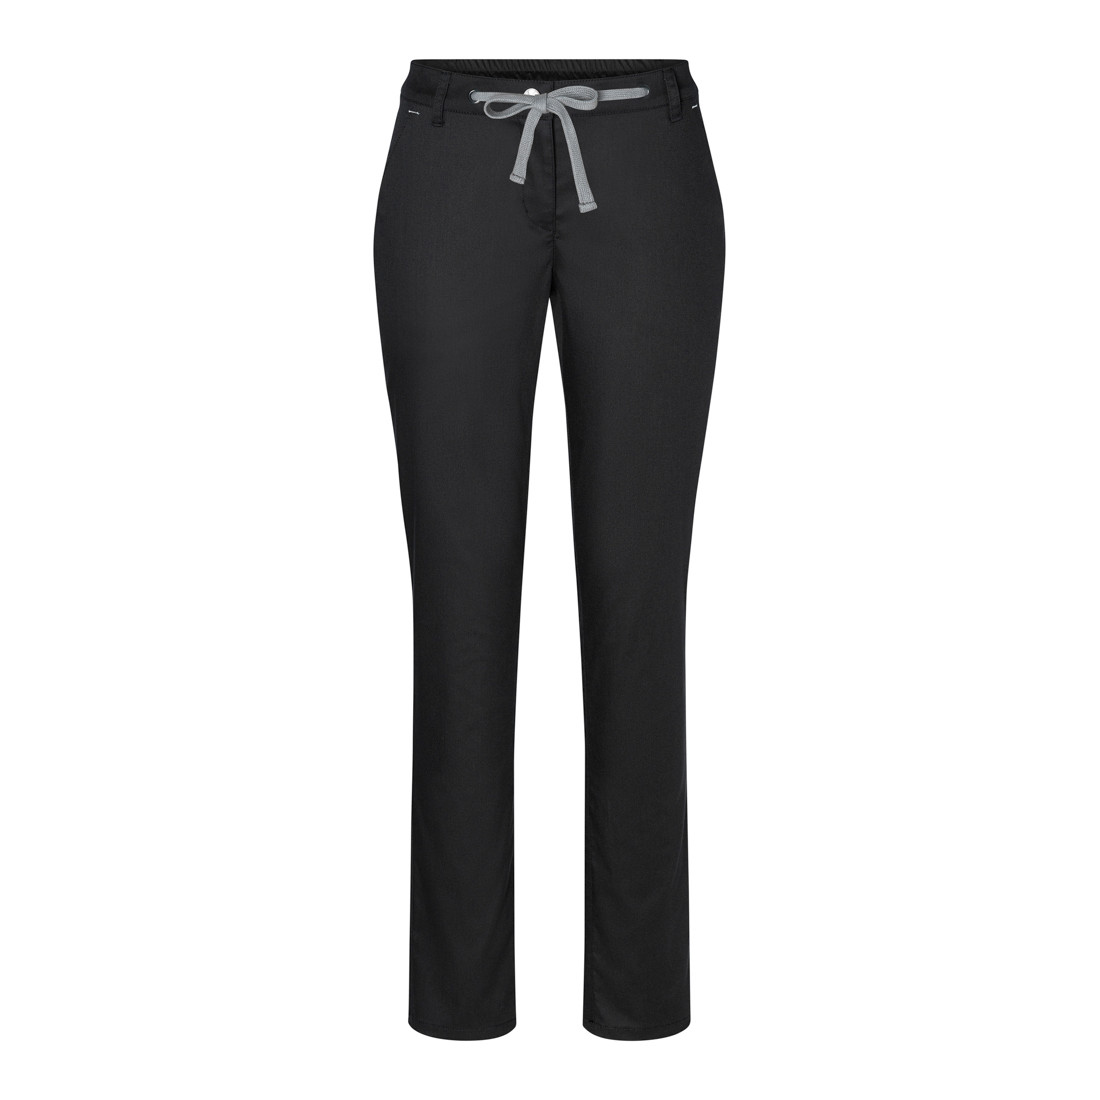 Pantalones Chinos Modern-Stretch para mujeres - Ropa de protección